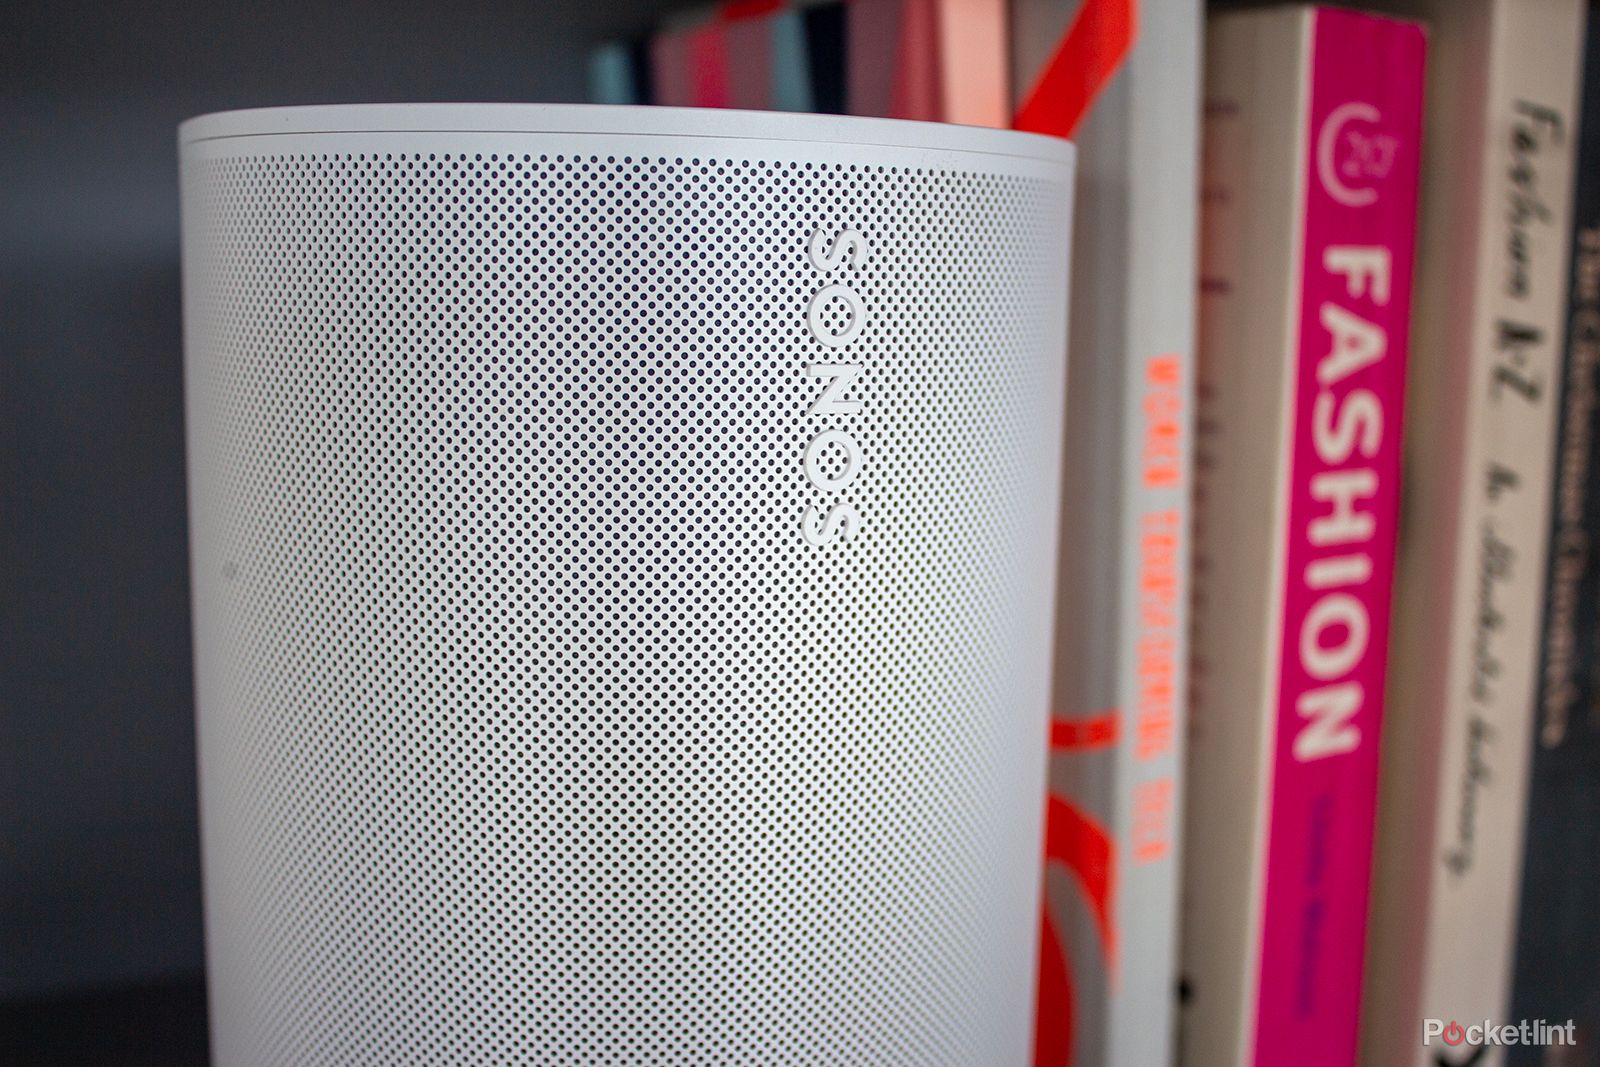 Best Wireless Speakers in 2023